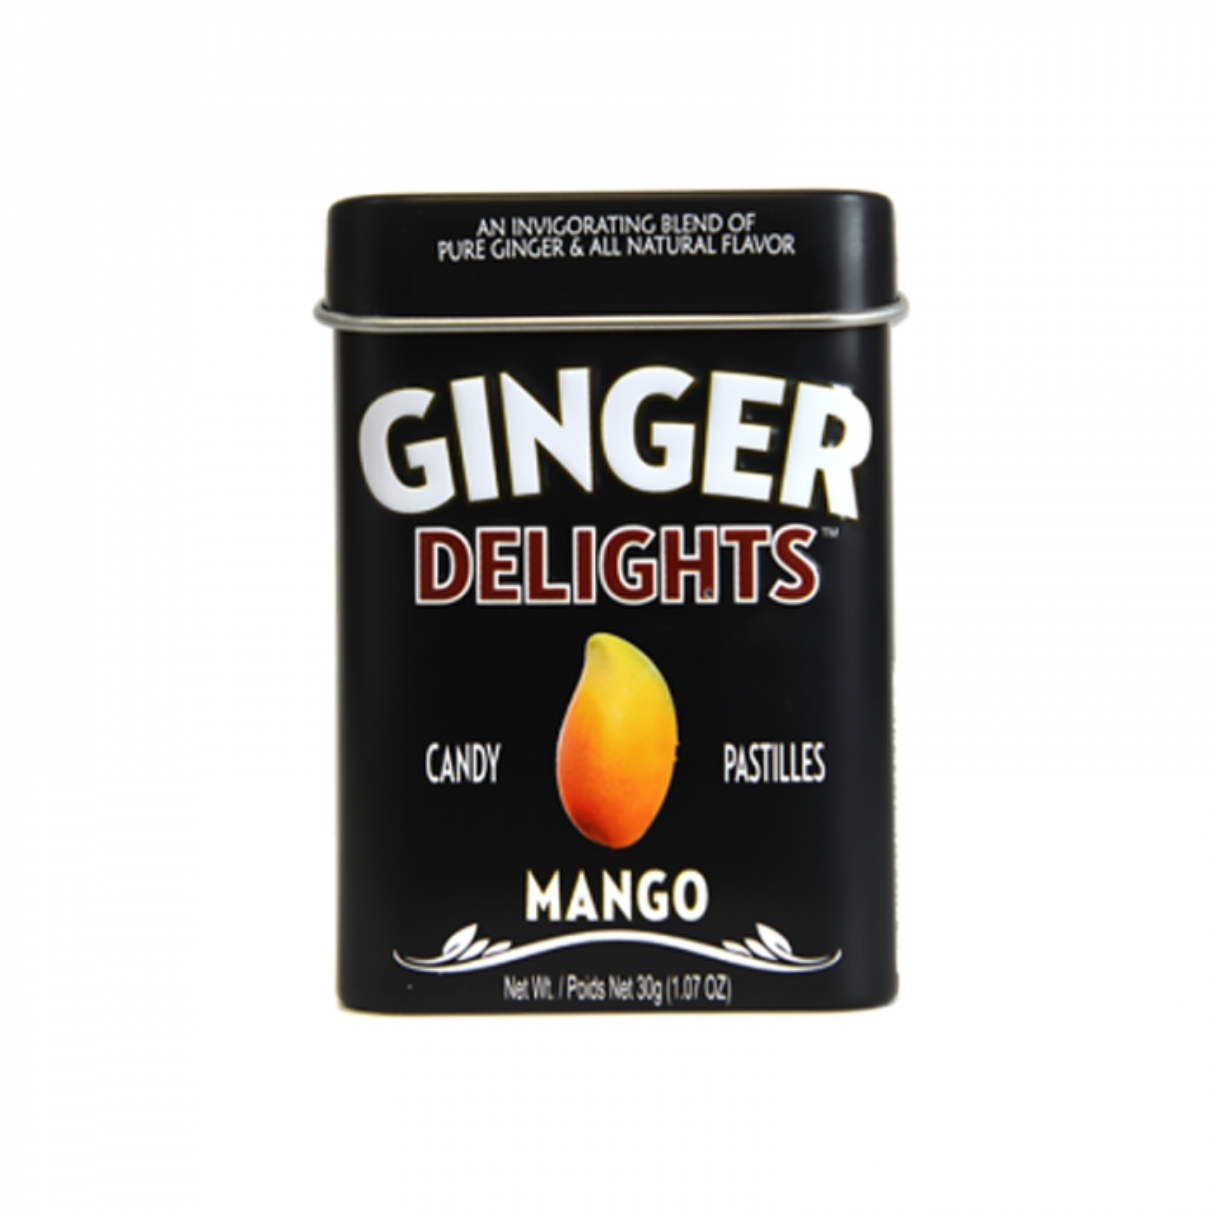 Ginger Delights Mango Candy Pastilles 1.07oz - 144ct